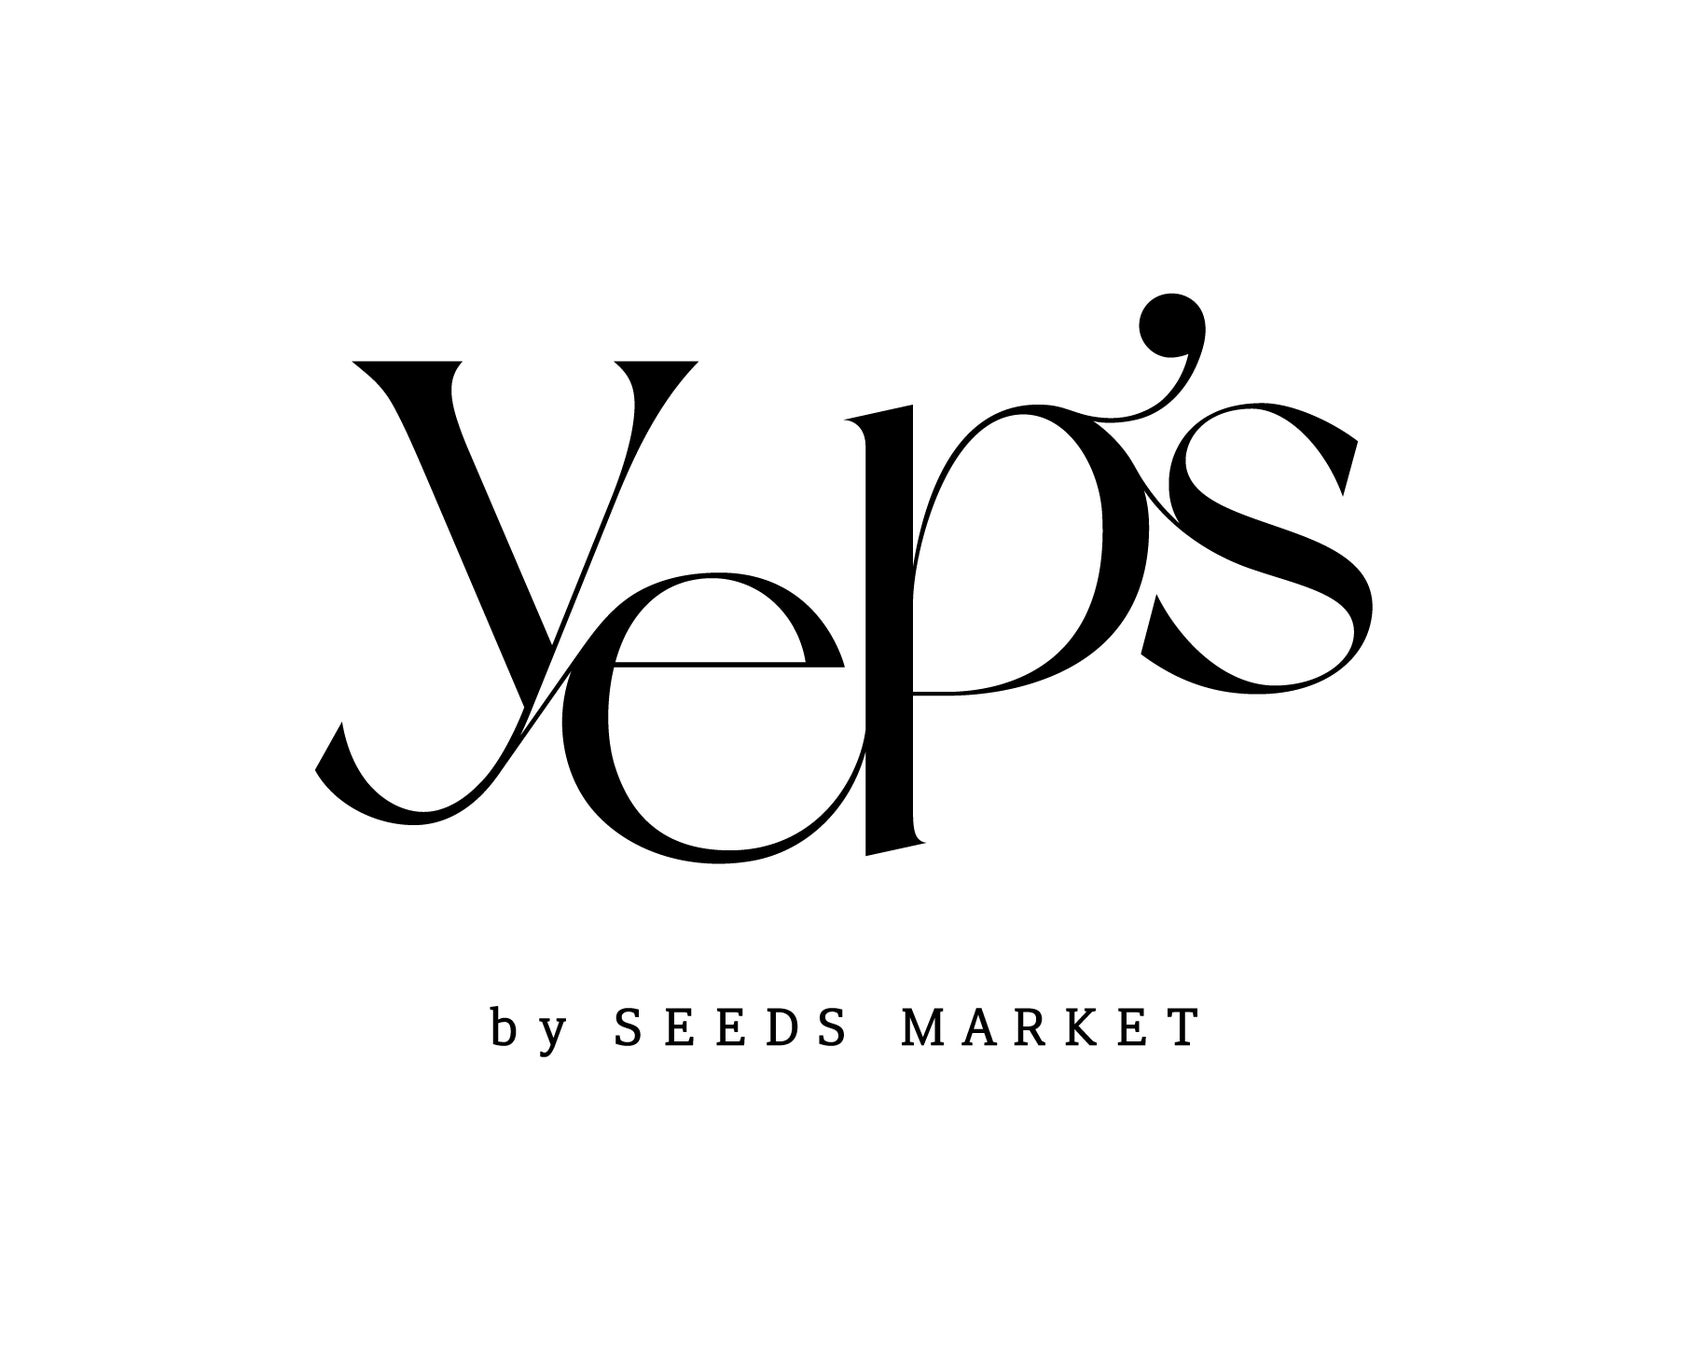 伊勢丹新宿店にて韓国コスメセレクト「Yep’s by SEEDSMARKET」ポップアップイベント開催